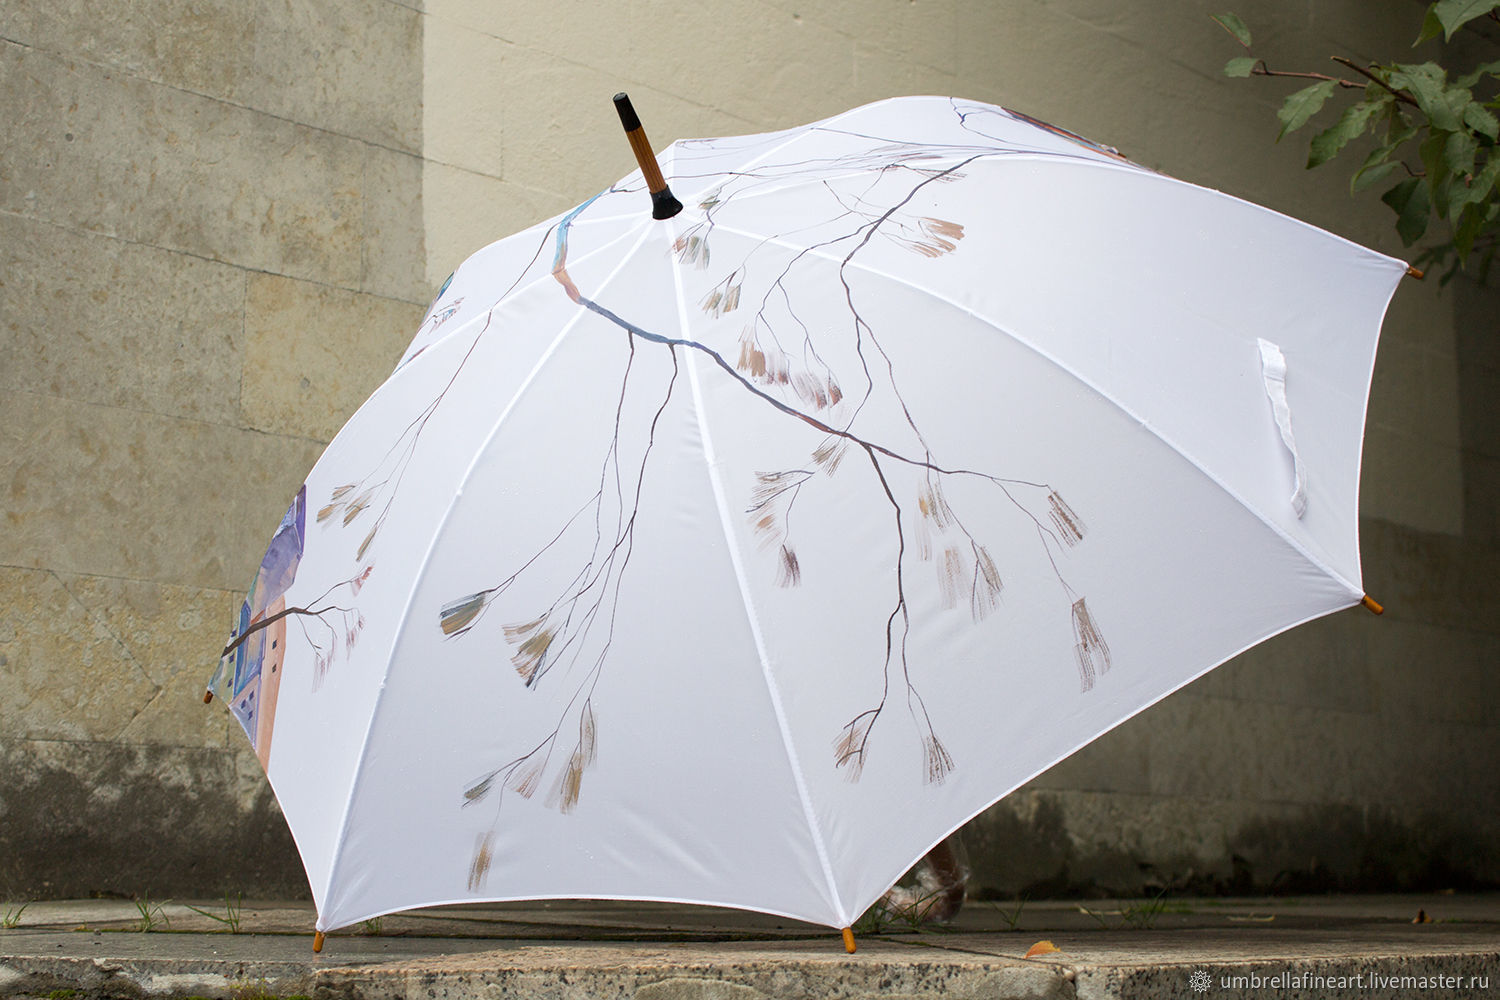 Зонтик легкий. Разрисованные зонты. Зонтик с Питером. Зонт туториал. Раскрашенные зонты.